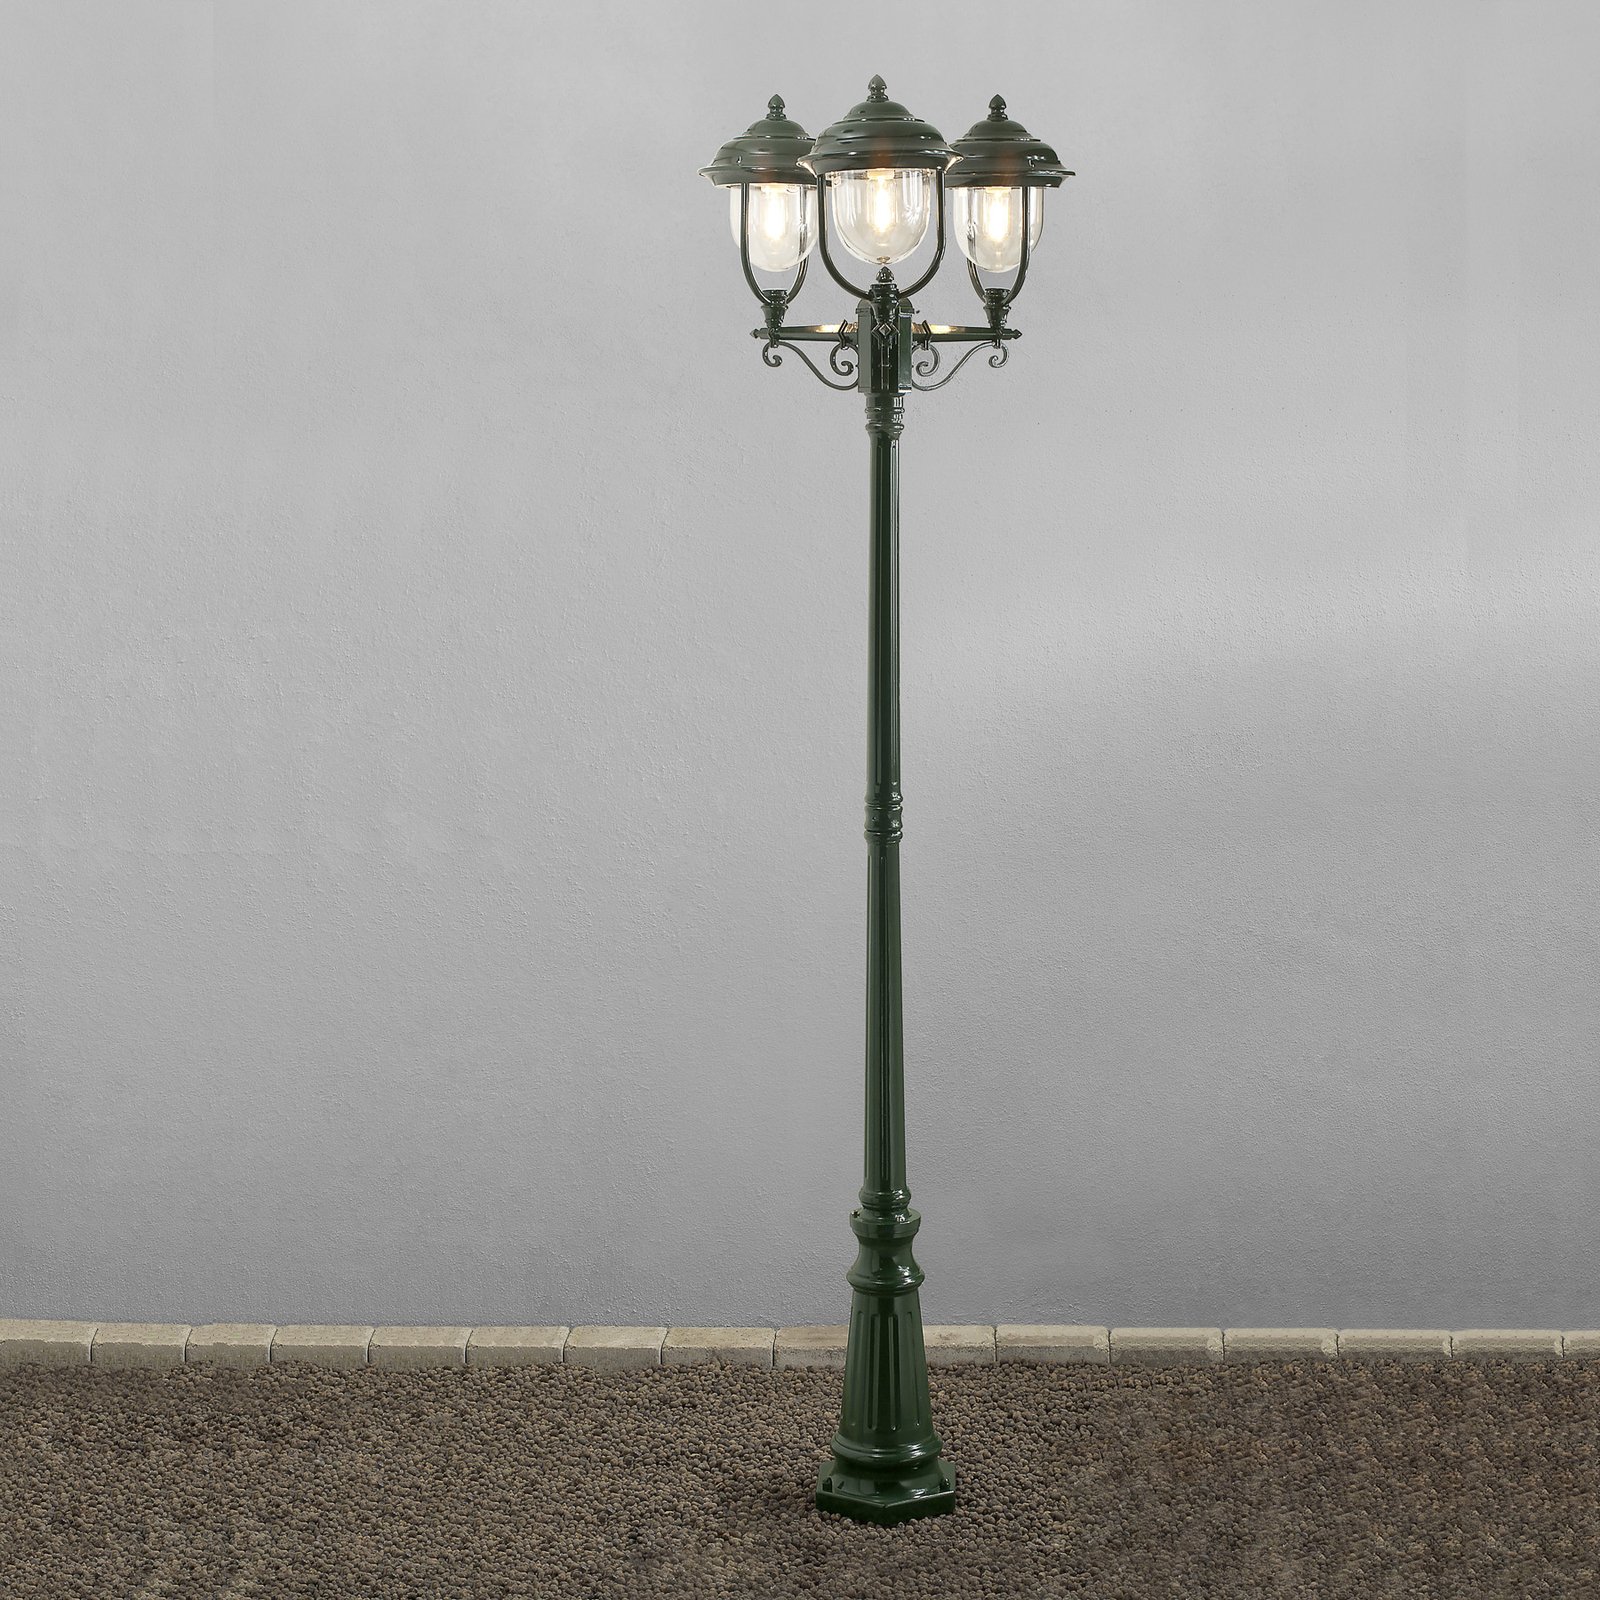 Árboc lámpa Parma 3 izzós zöld színben